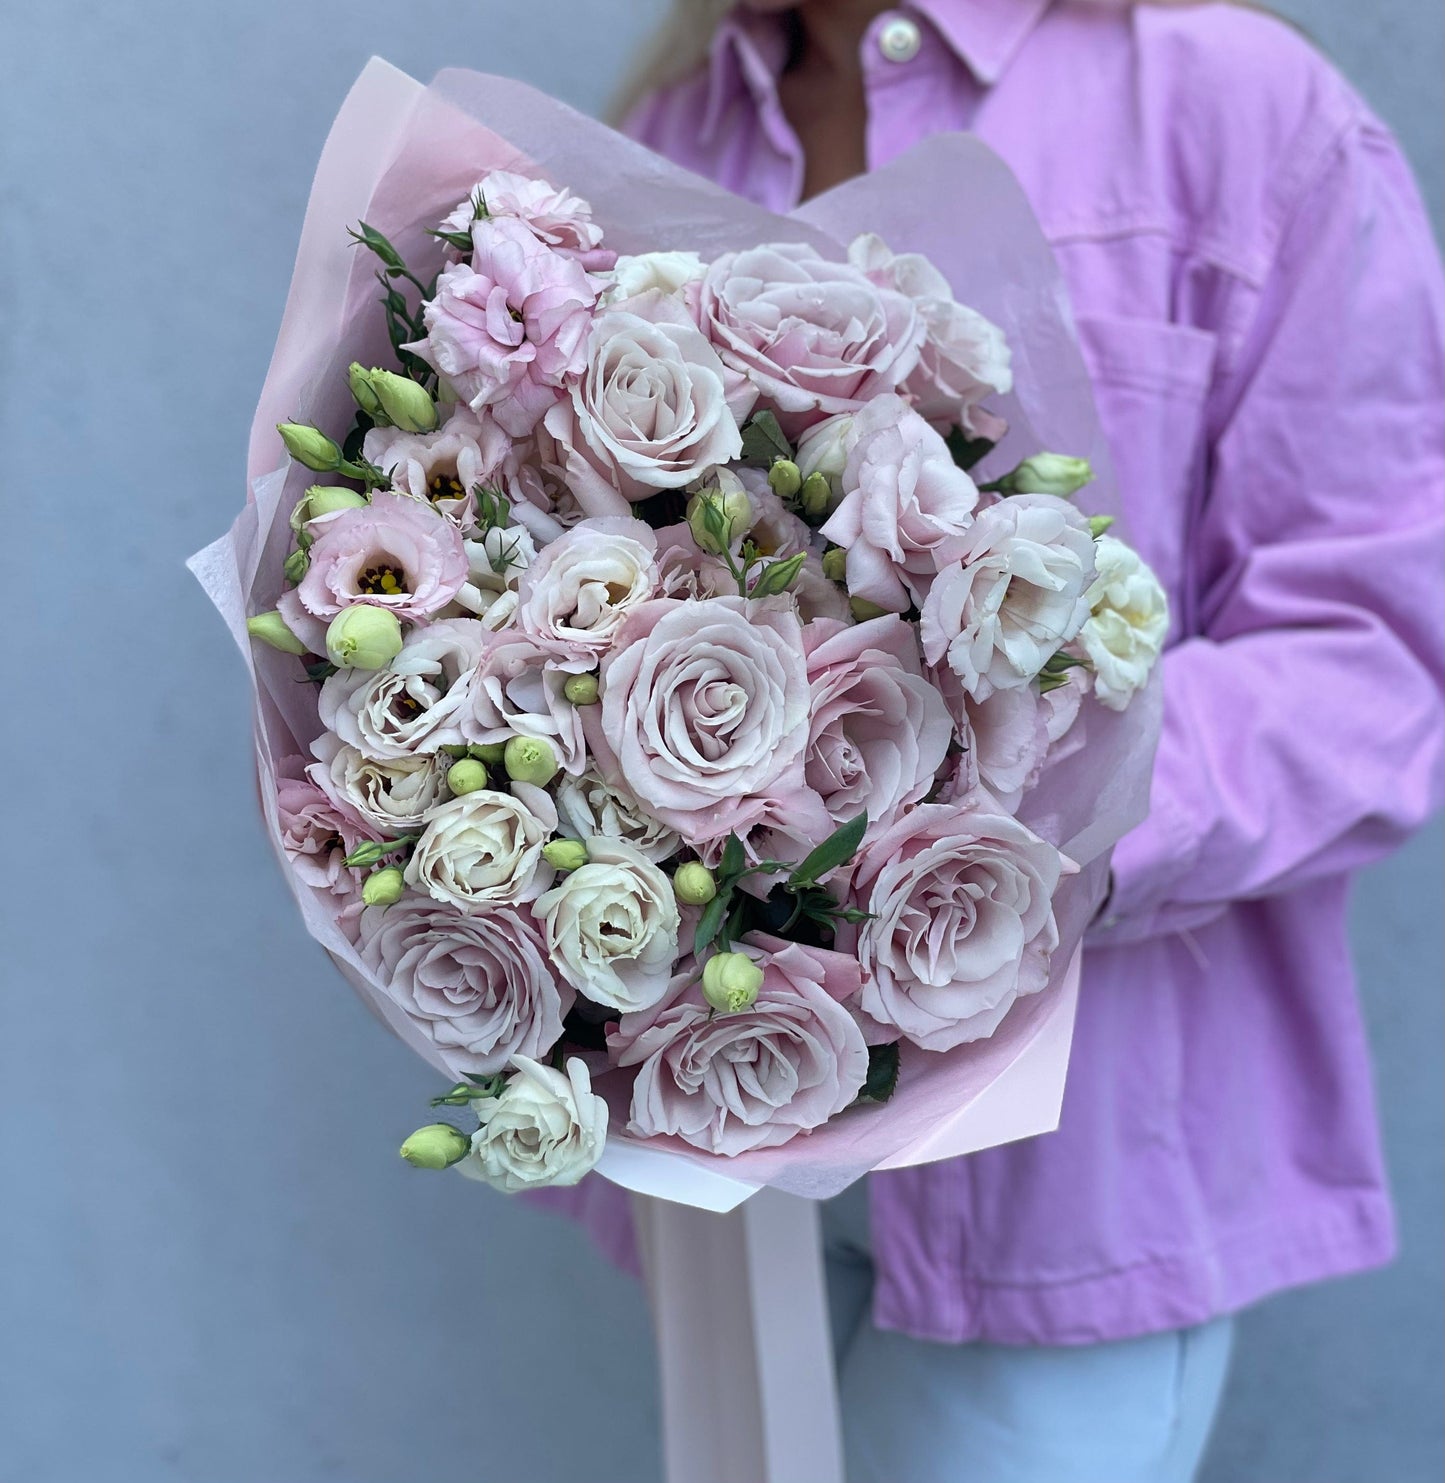 Adorable pink bouquet